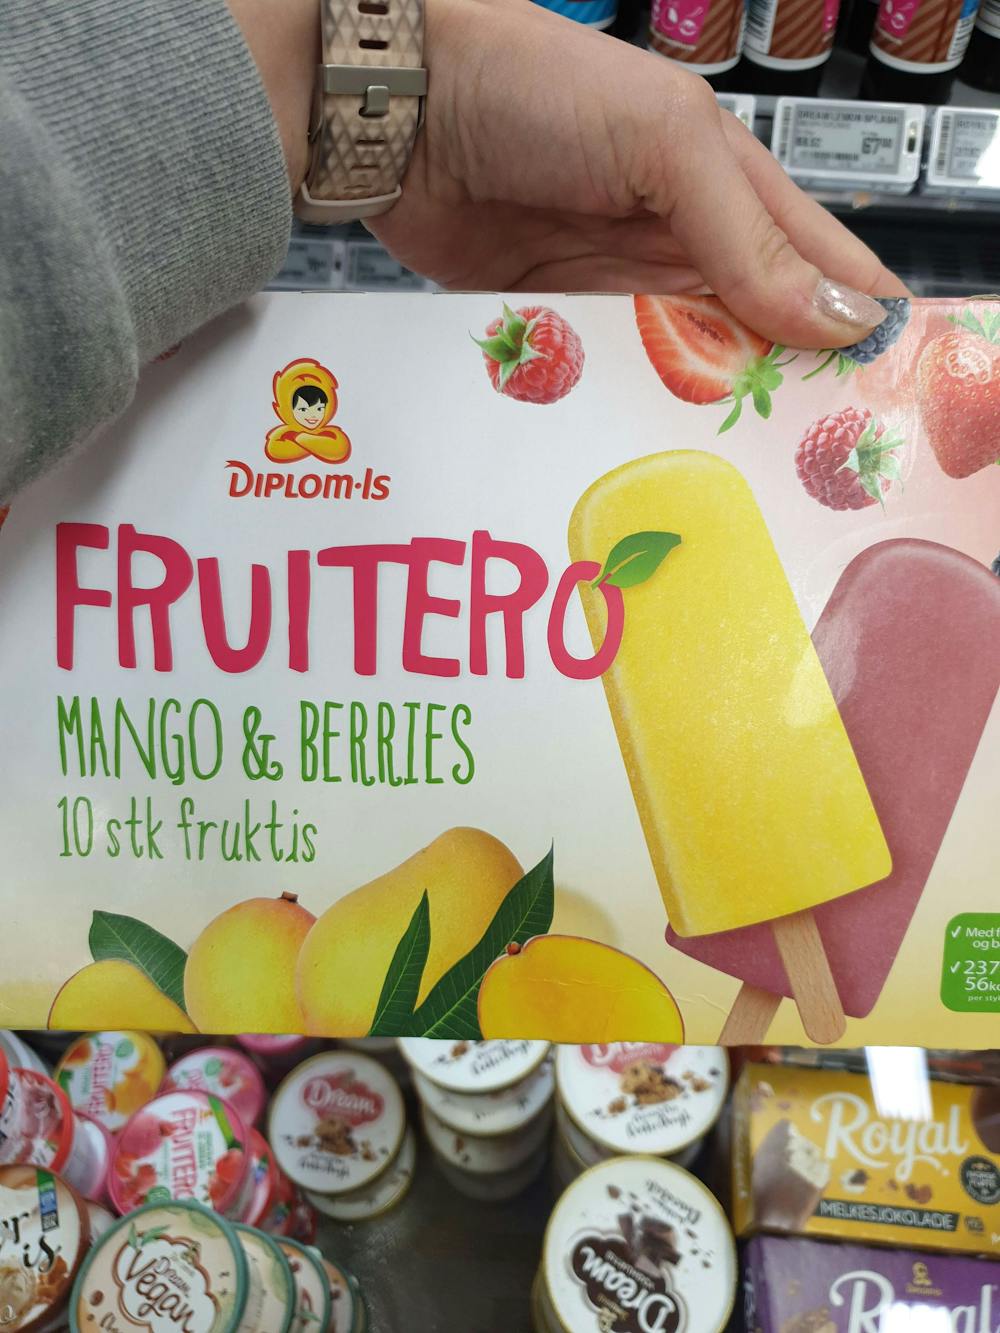 Fruitero mango & berries, Diplom-Is